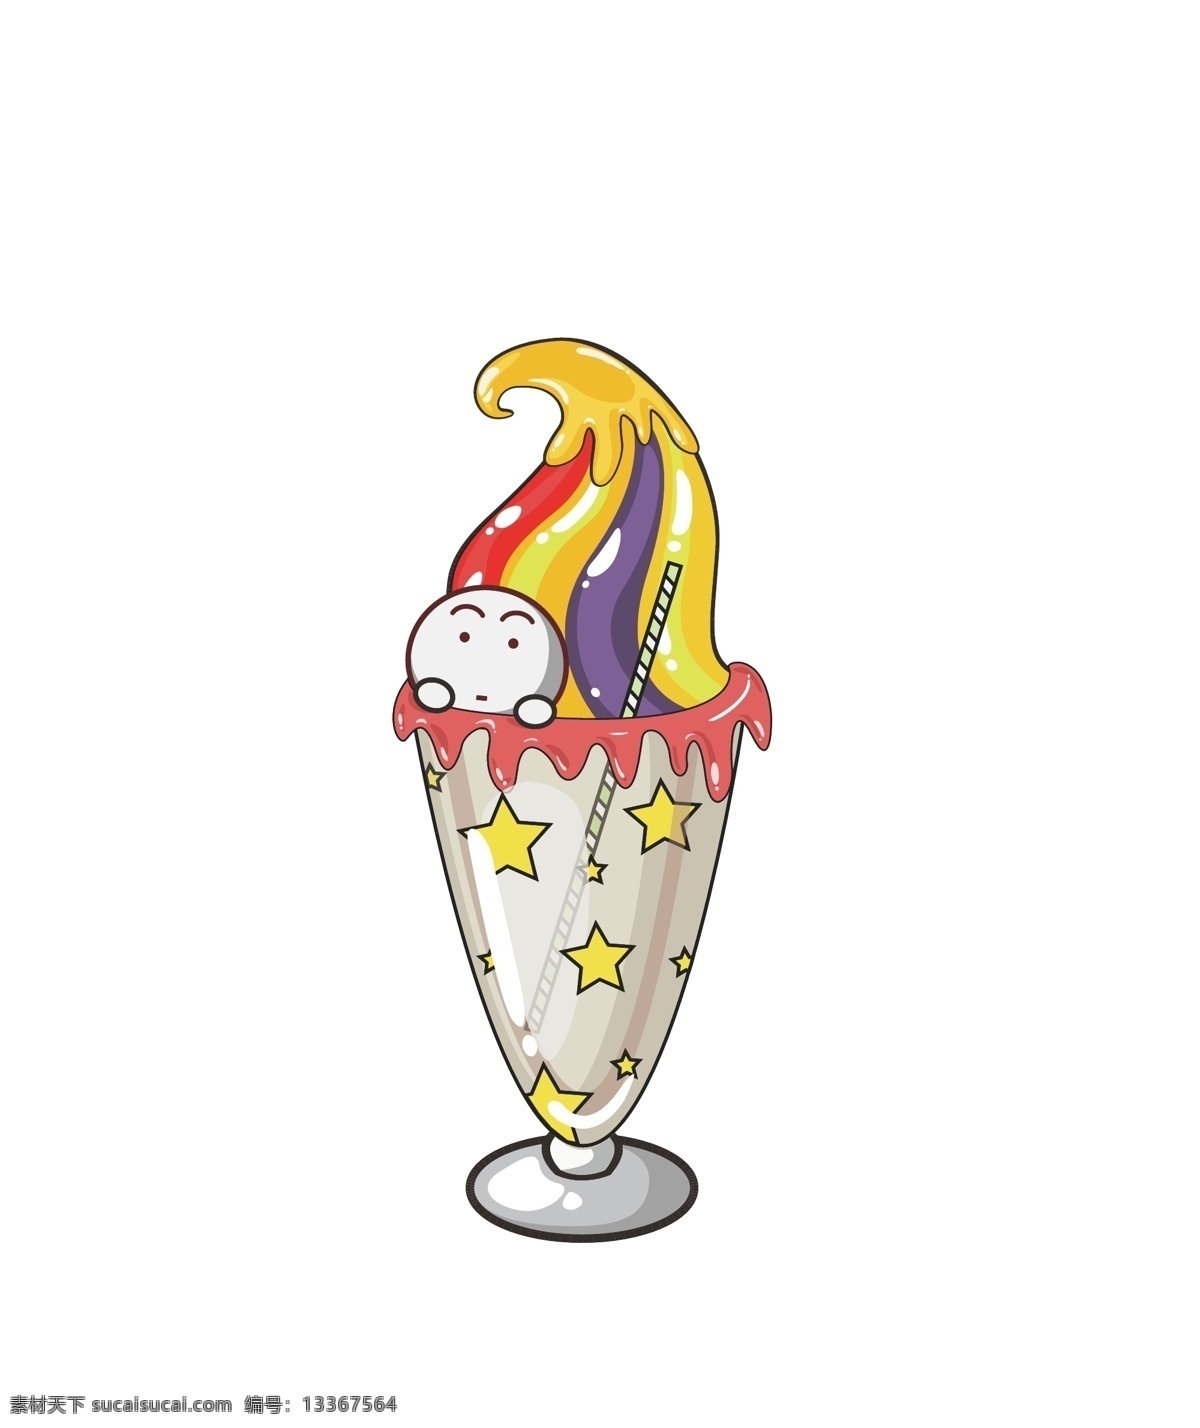 卡通 冰淇淋 雪糕 甜品 水果 伞 甜筒 食物 樱桃 橙 吸管 果酱 夏天 冰凉 消暑 甜食